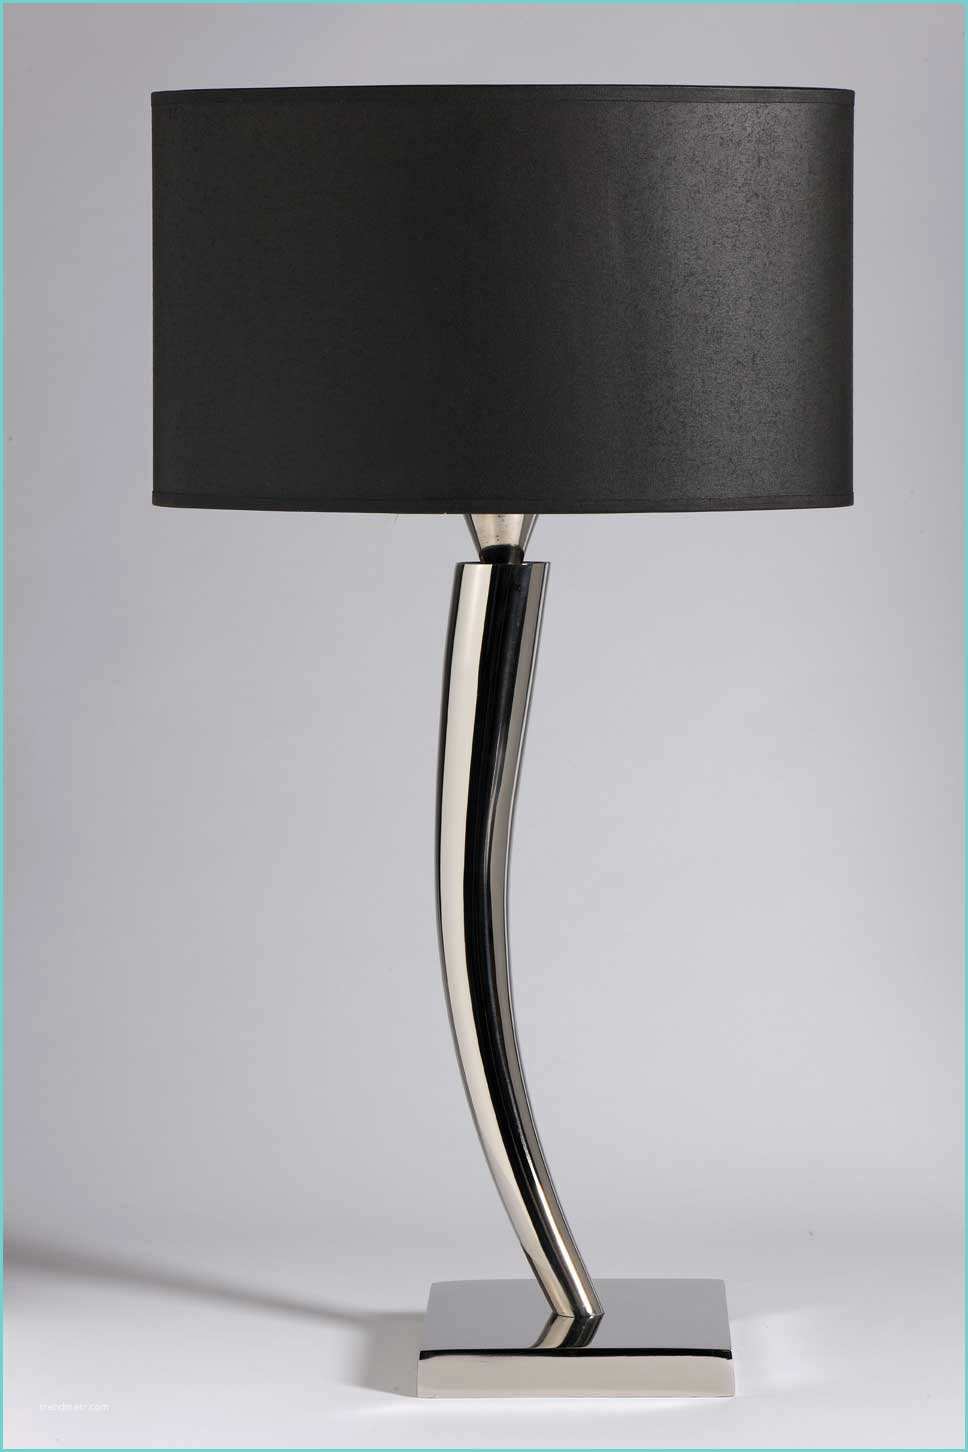 Lampe De Chevet Design Led Lampe Chevet Design Contemporain Le Design Led